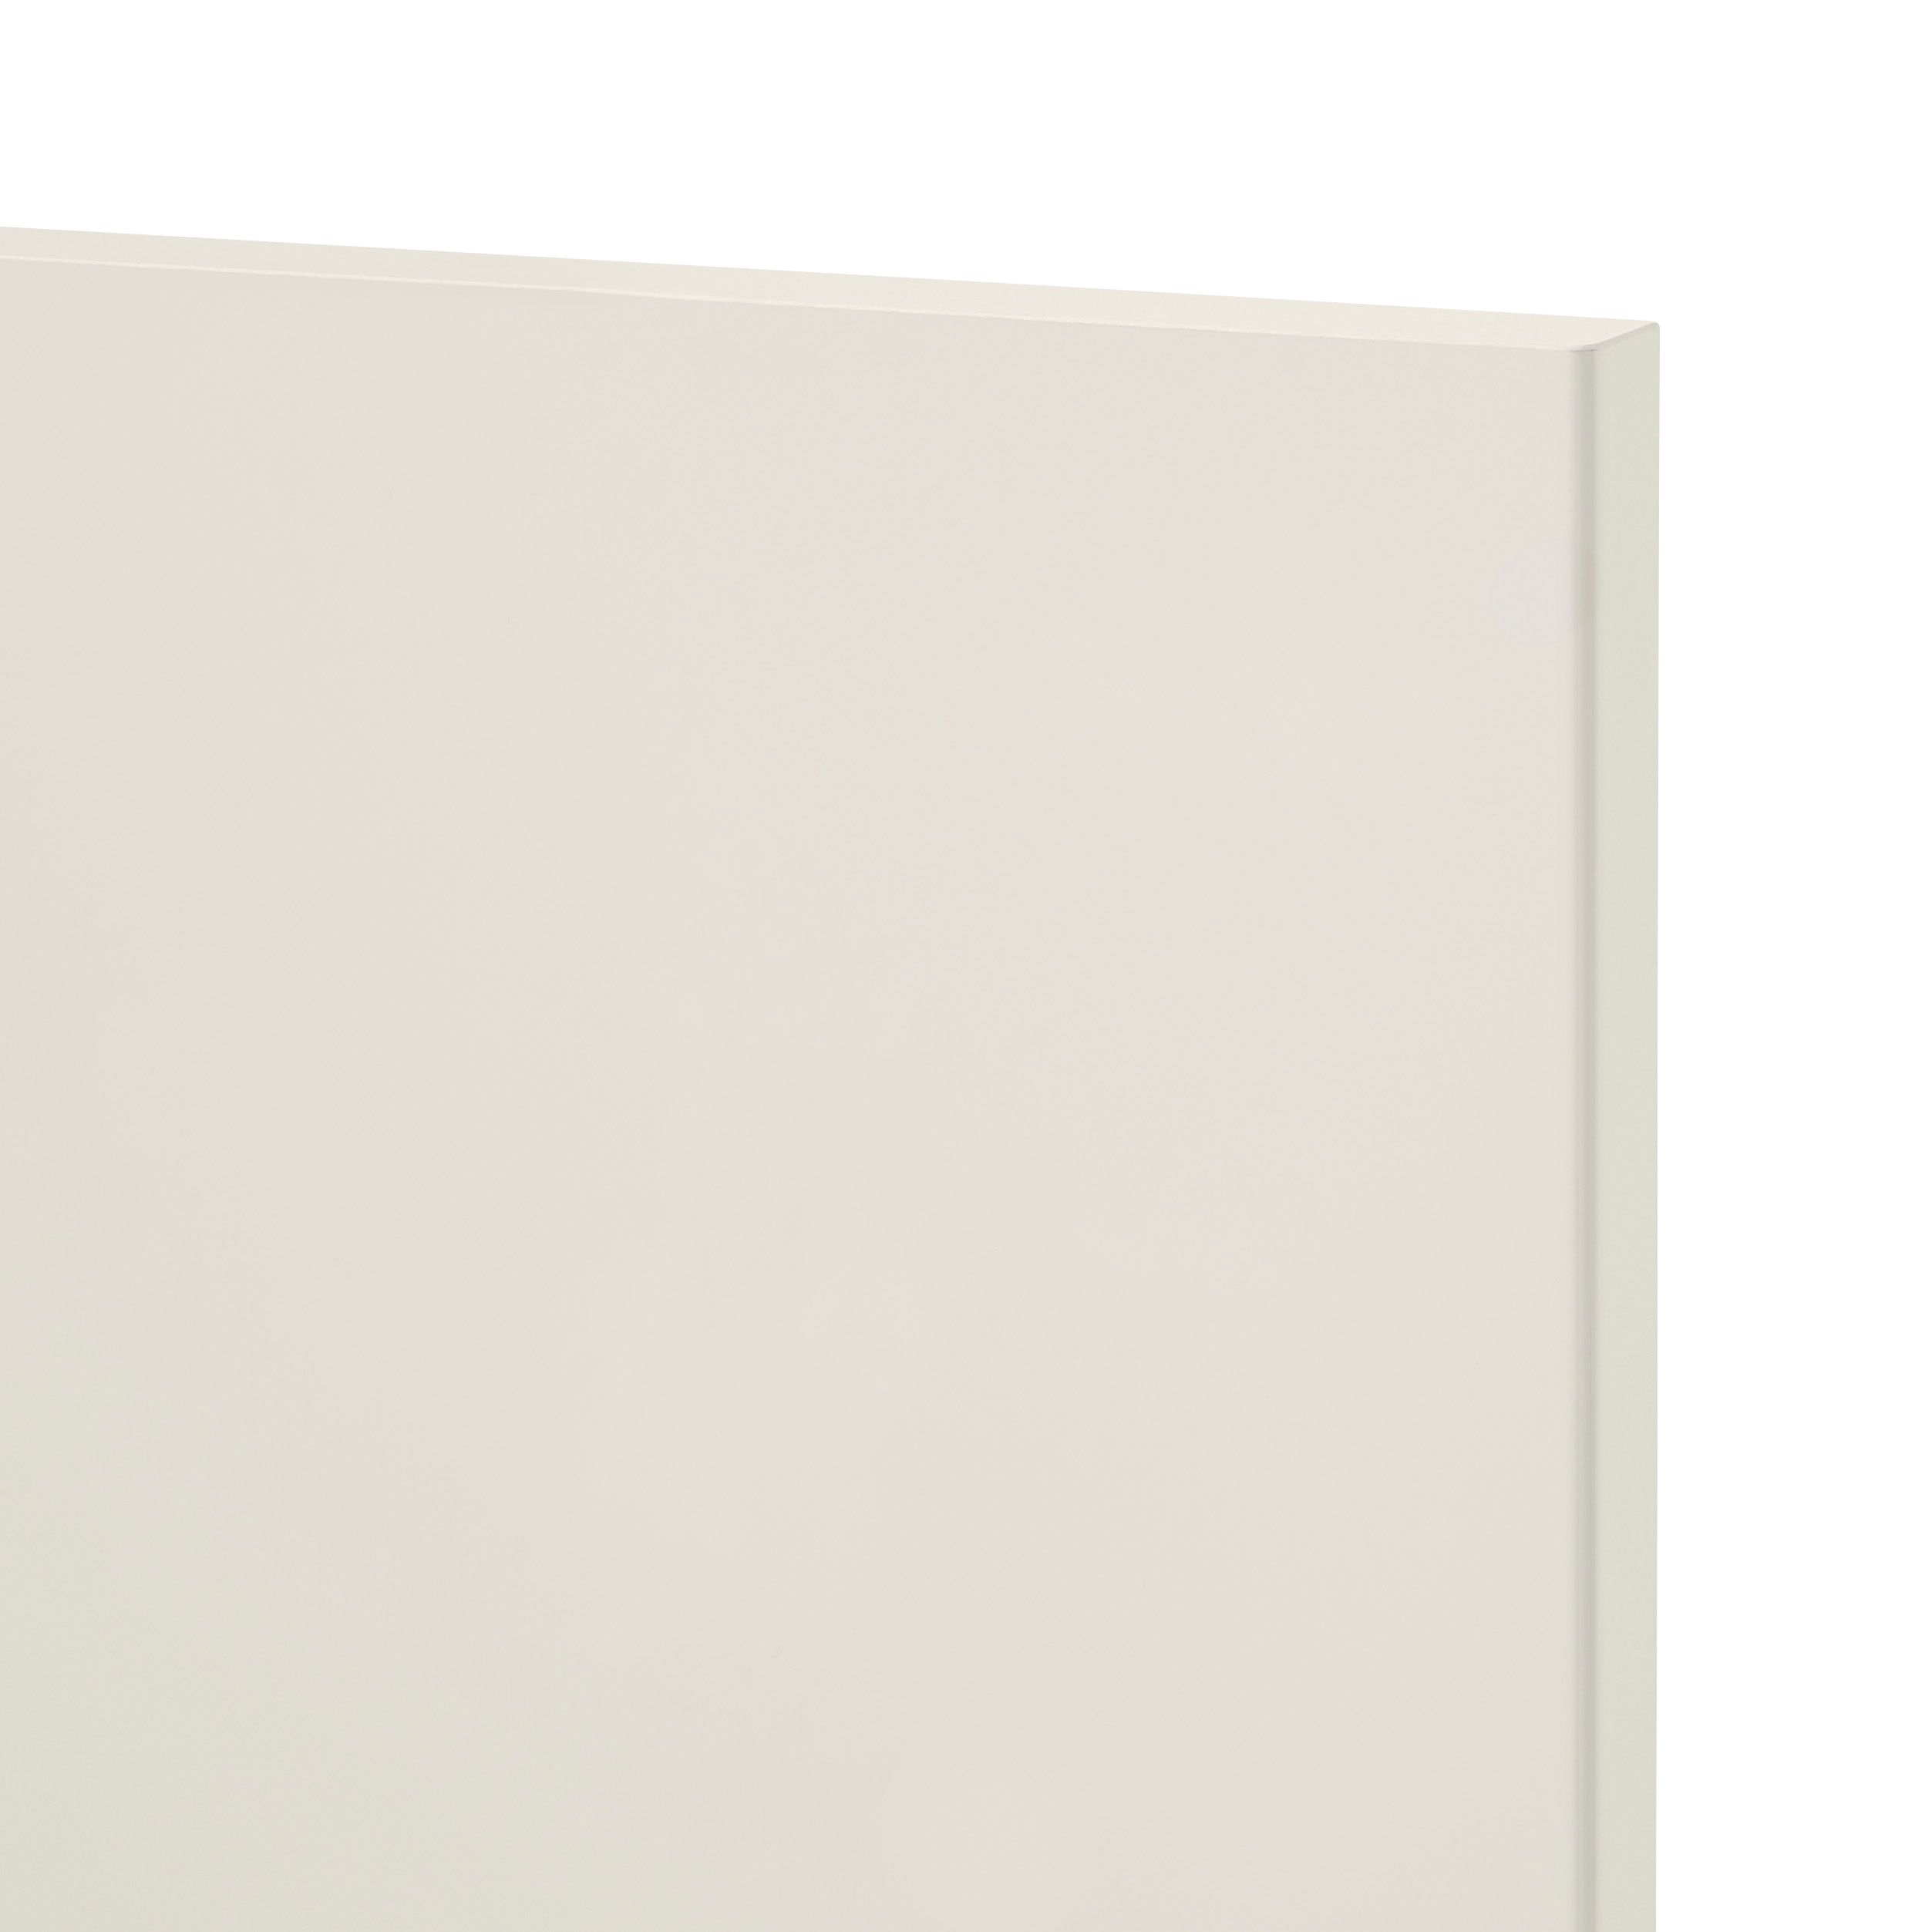 GoodHome Stevia Gloss cream slab Tall larder Cabinet door (W)600mm (H)1181mm (T)18mm